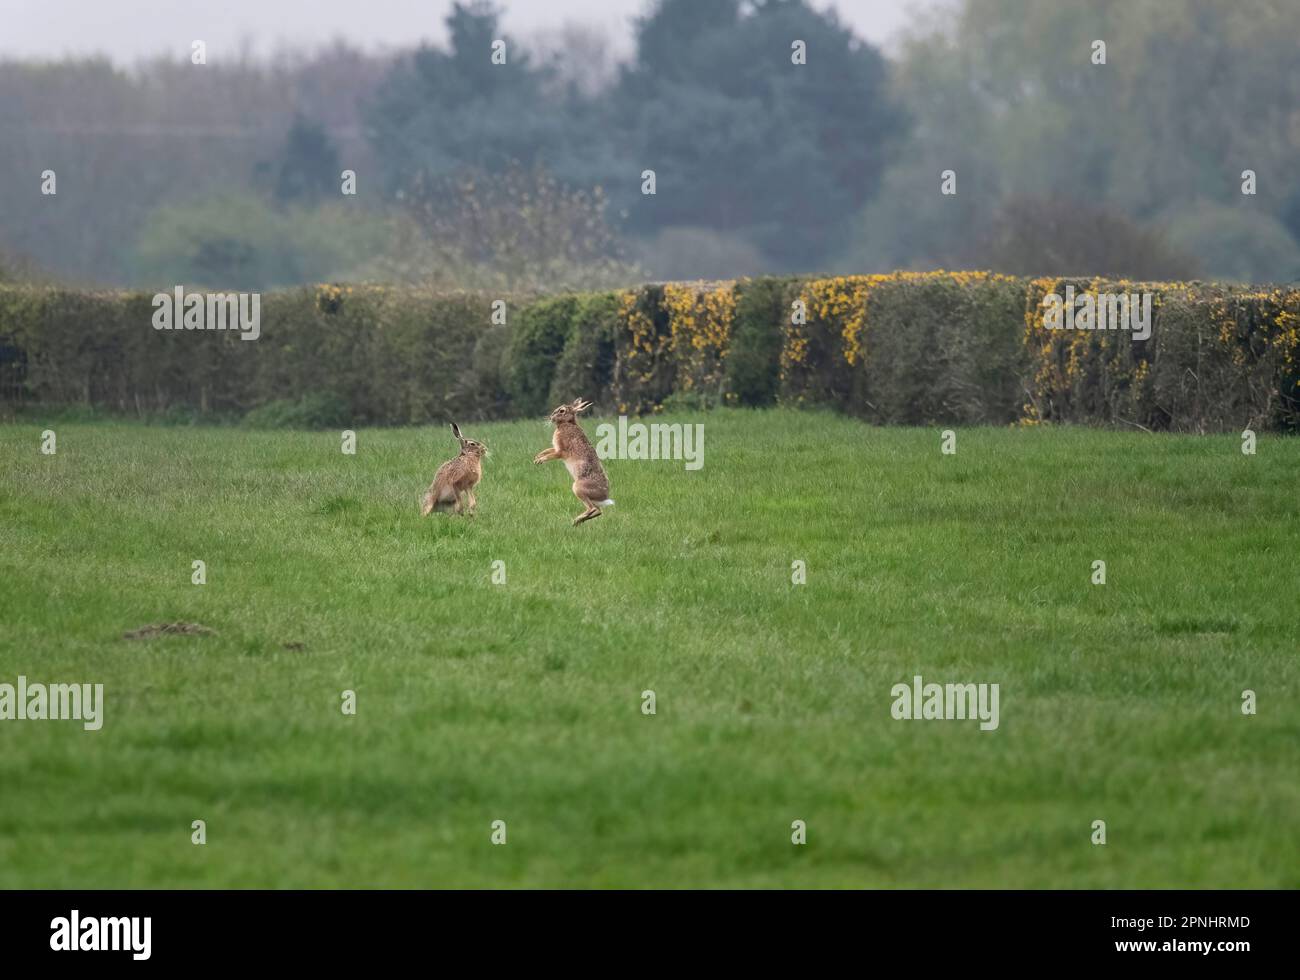 Lièvre européen, lièvre brun, Lepus europaeus, deux lièvres brunes dans un champ, Lancashire, Royaume-Uni Banque D'Images